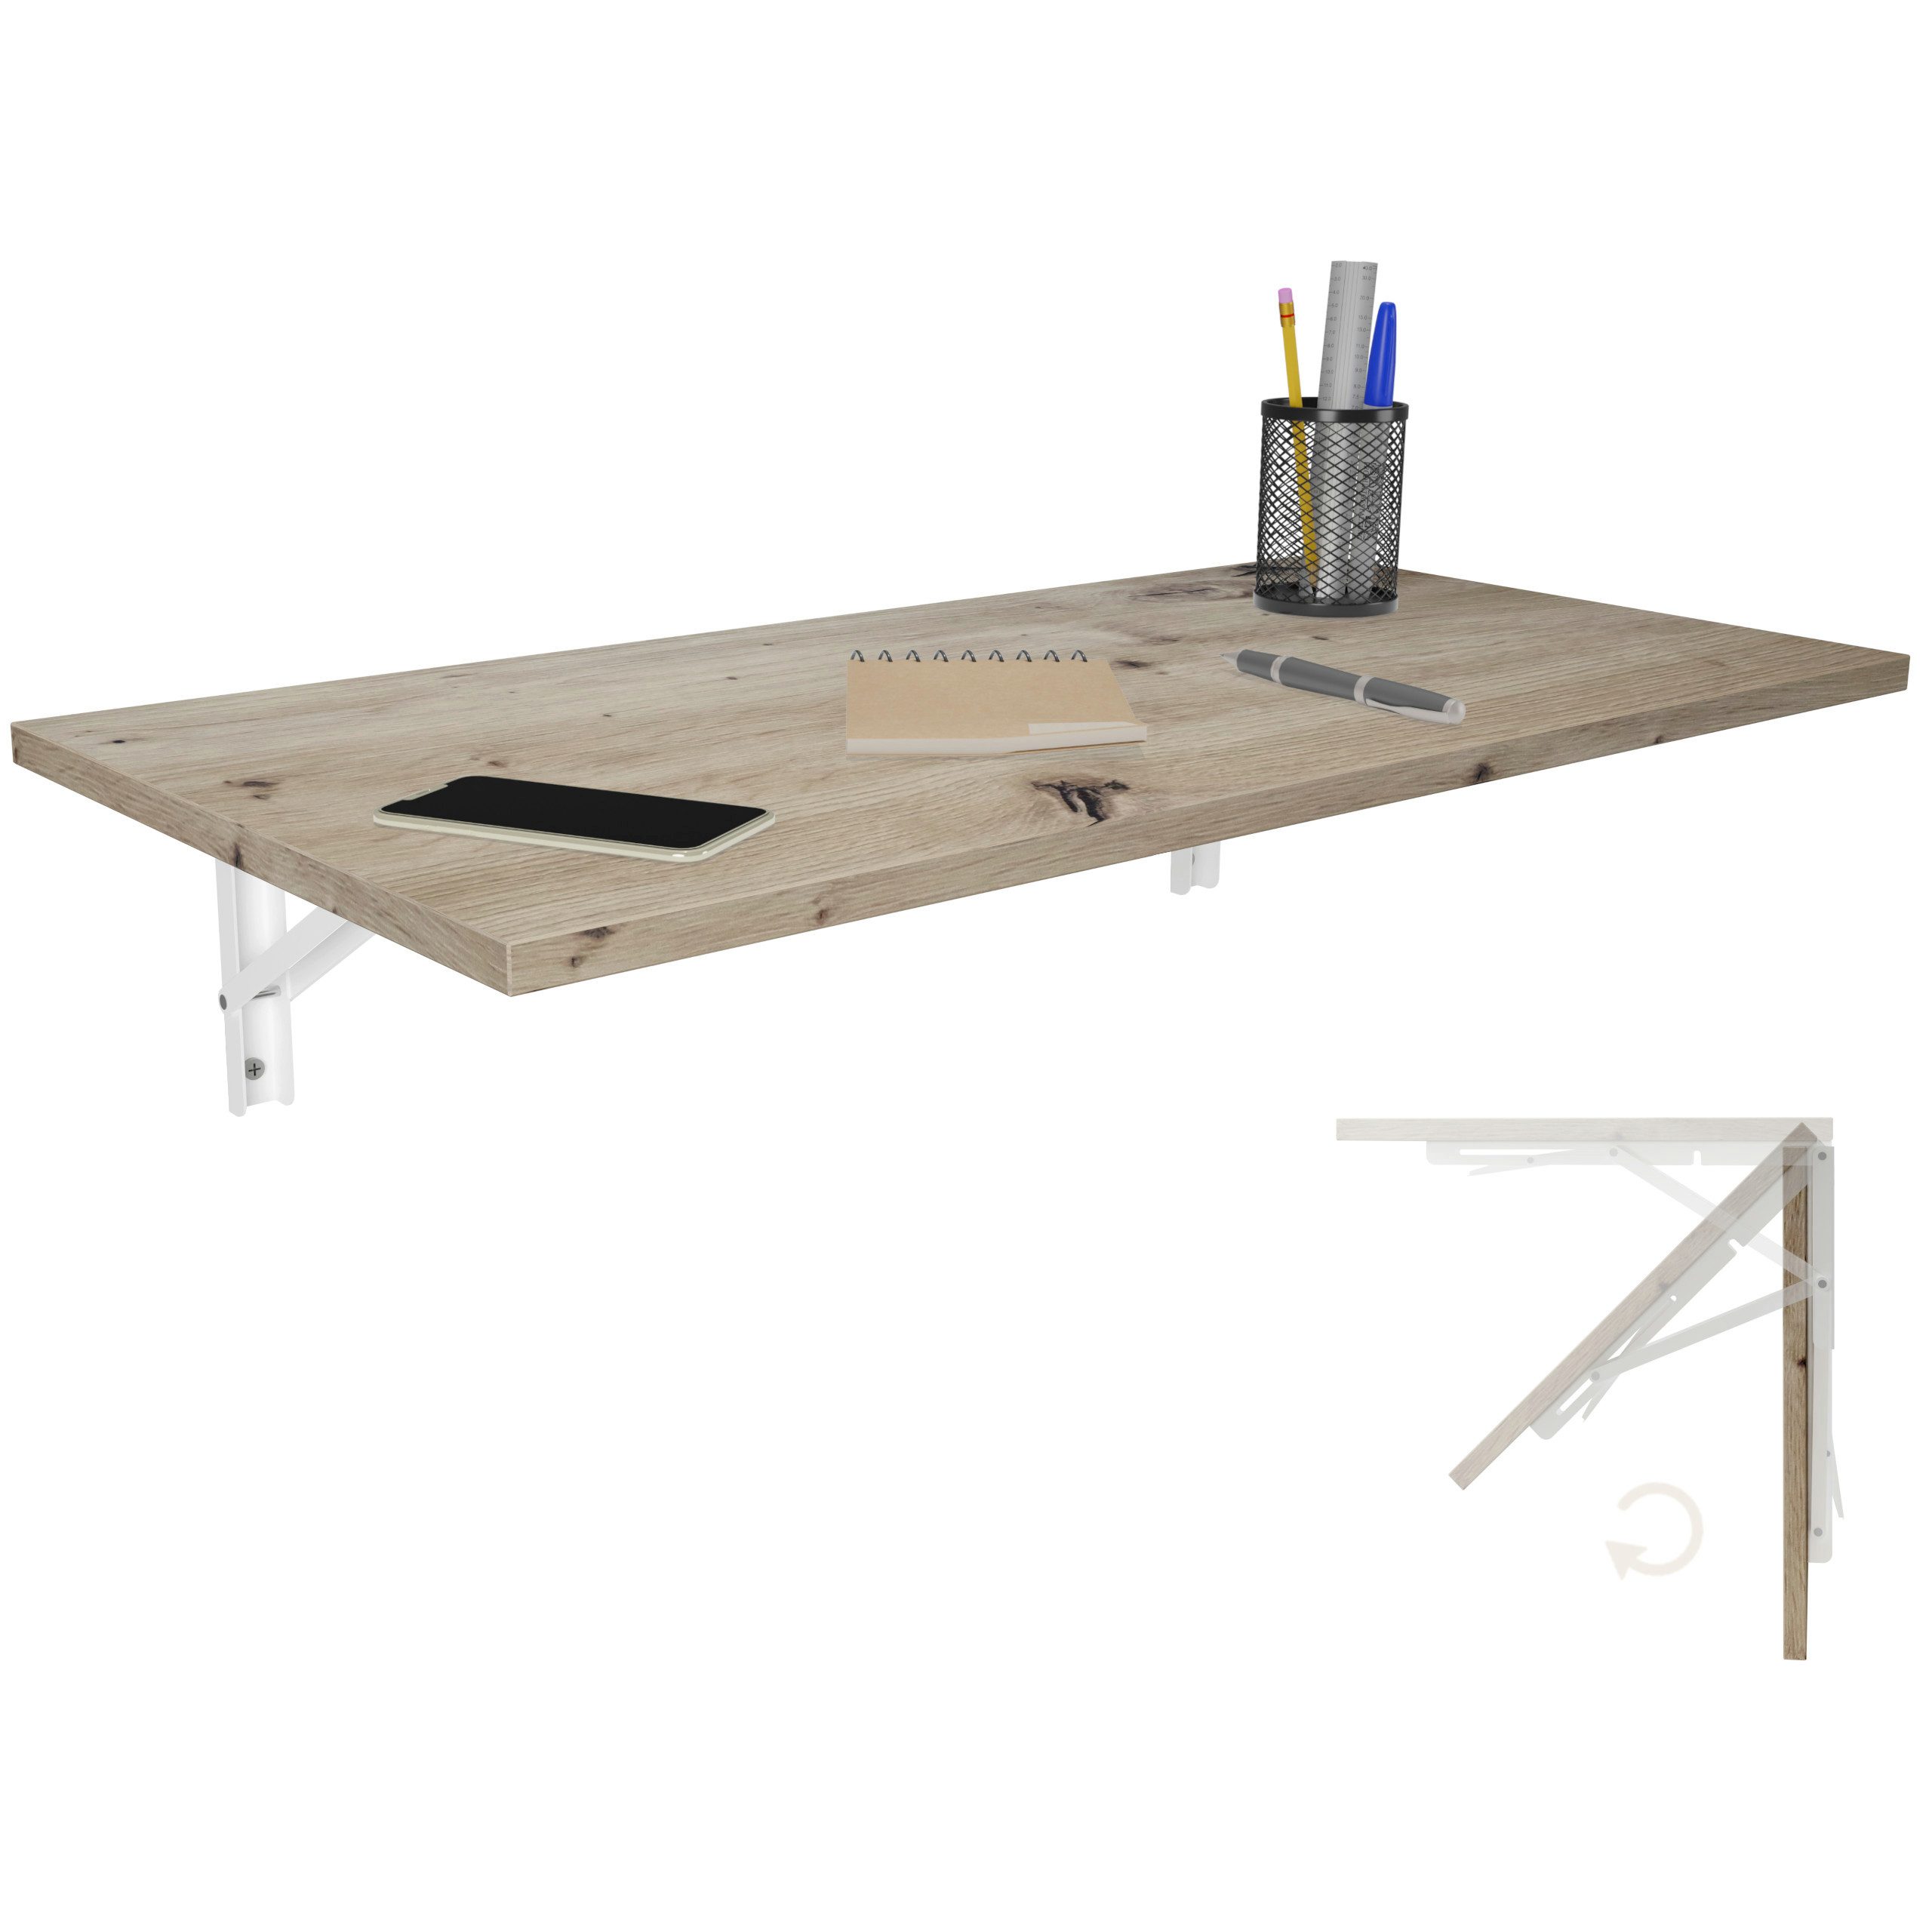 KDR Produktgestaltung Klapptisch 80x40 Wandklapptisch Esstisch Küchentisch Schreibtisch Wand Tisch, Eiche astig